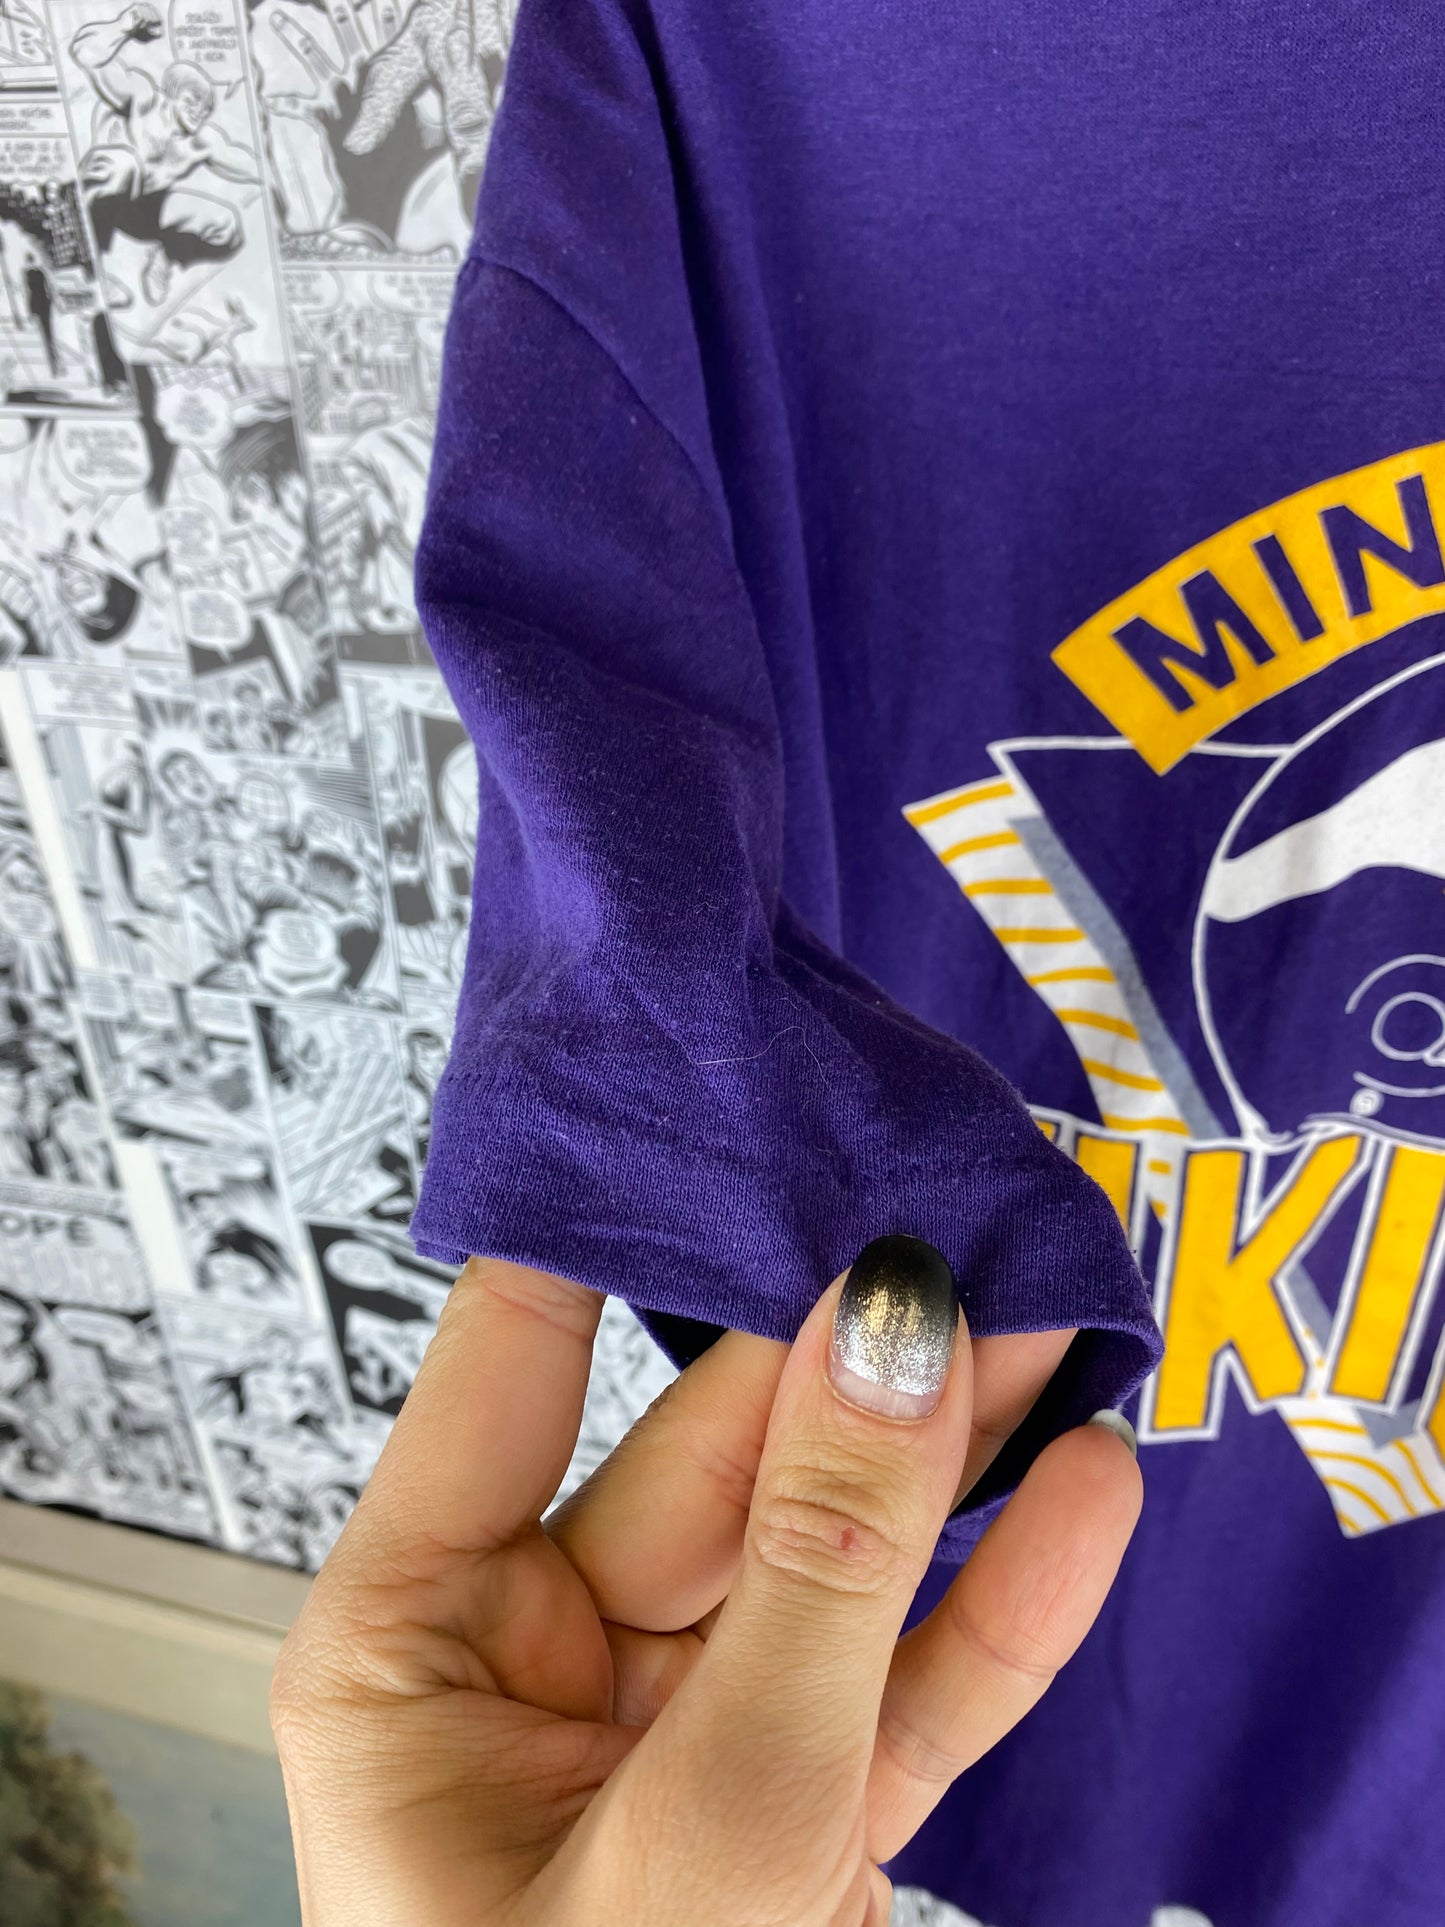 Vintage Minnesota Vikings 80s t-shirt - size XL